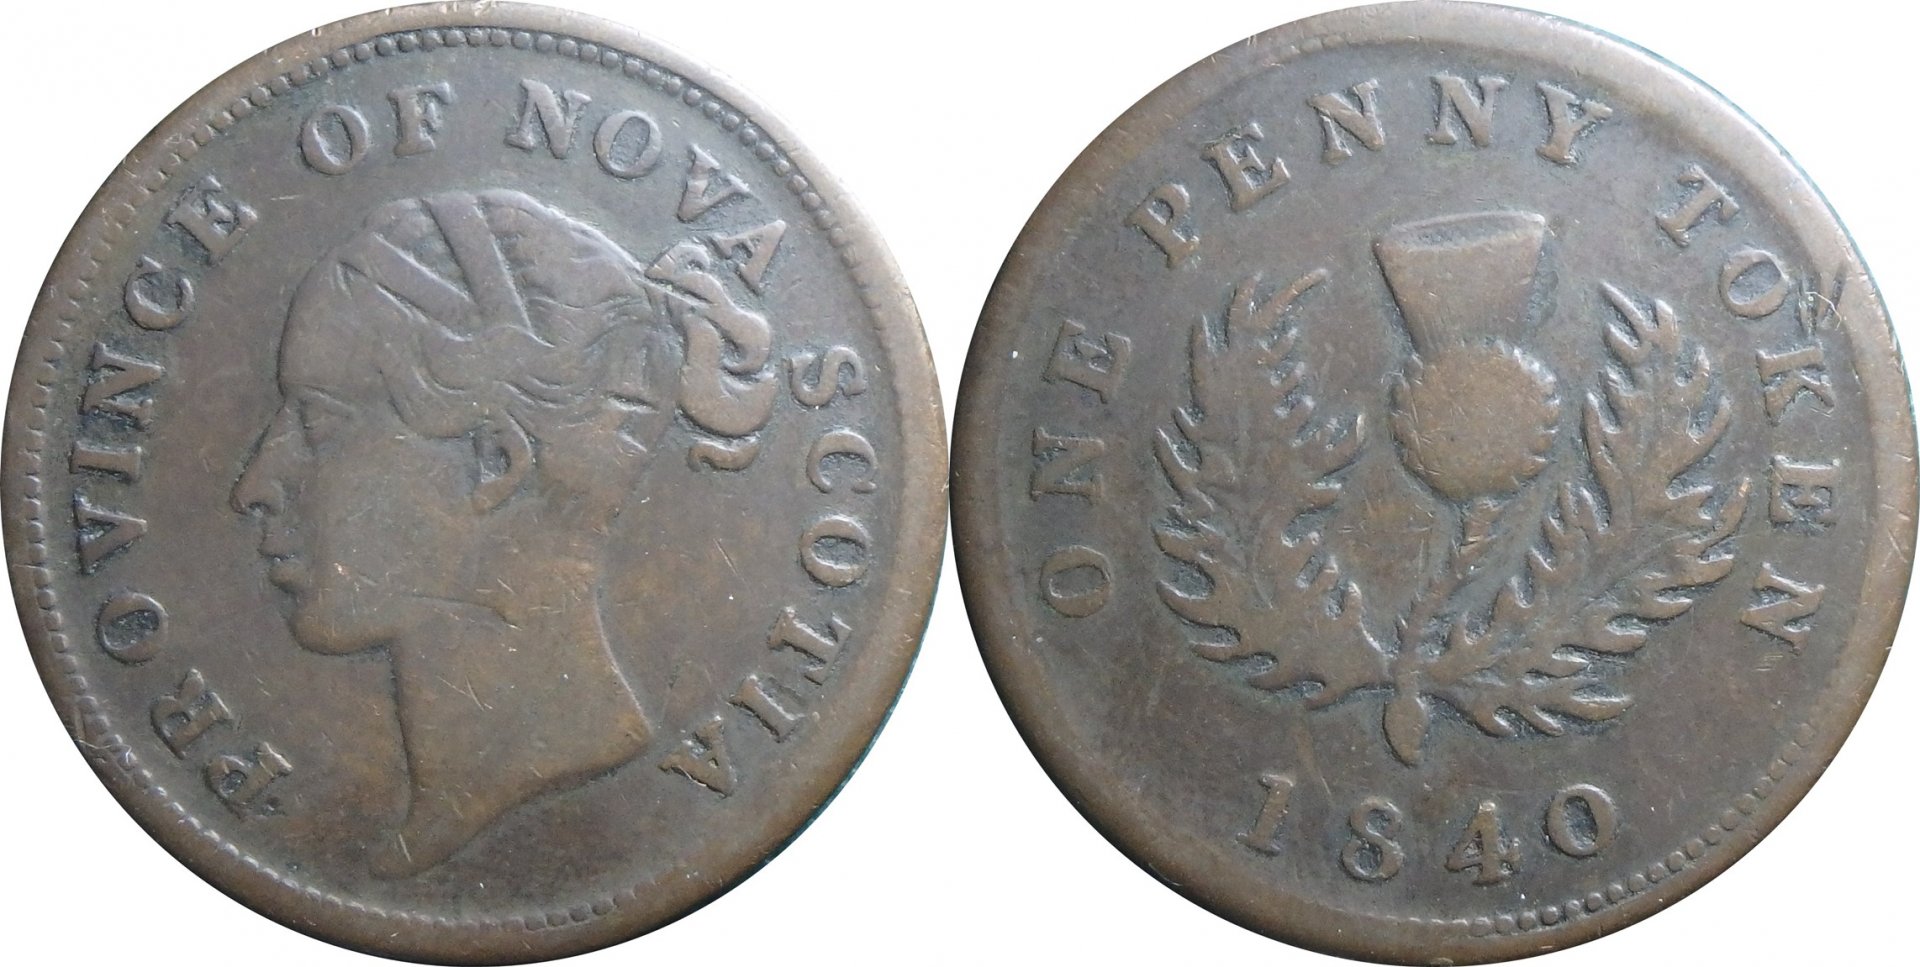 1840 CA-NS 1 p token.jpg